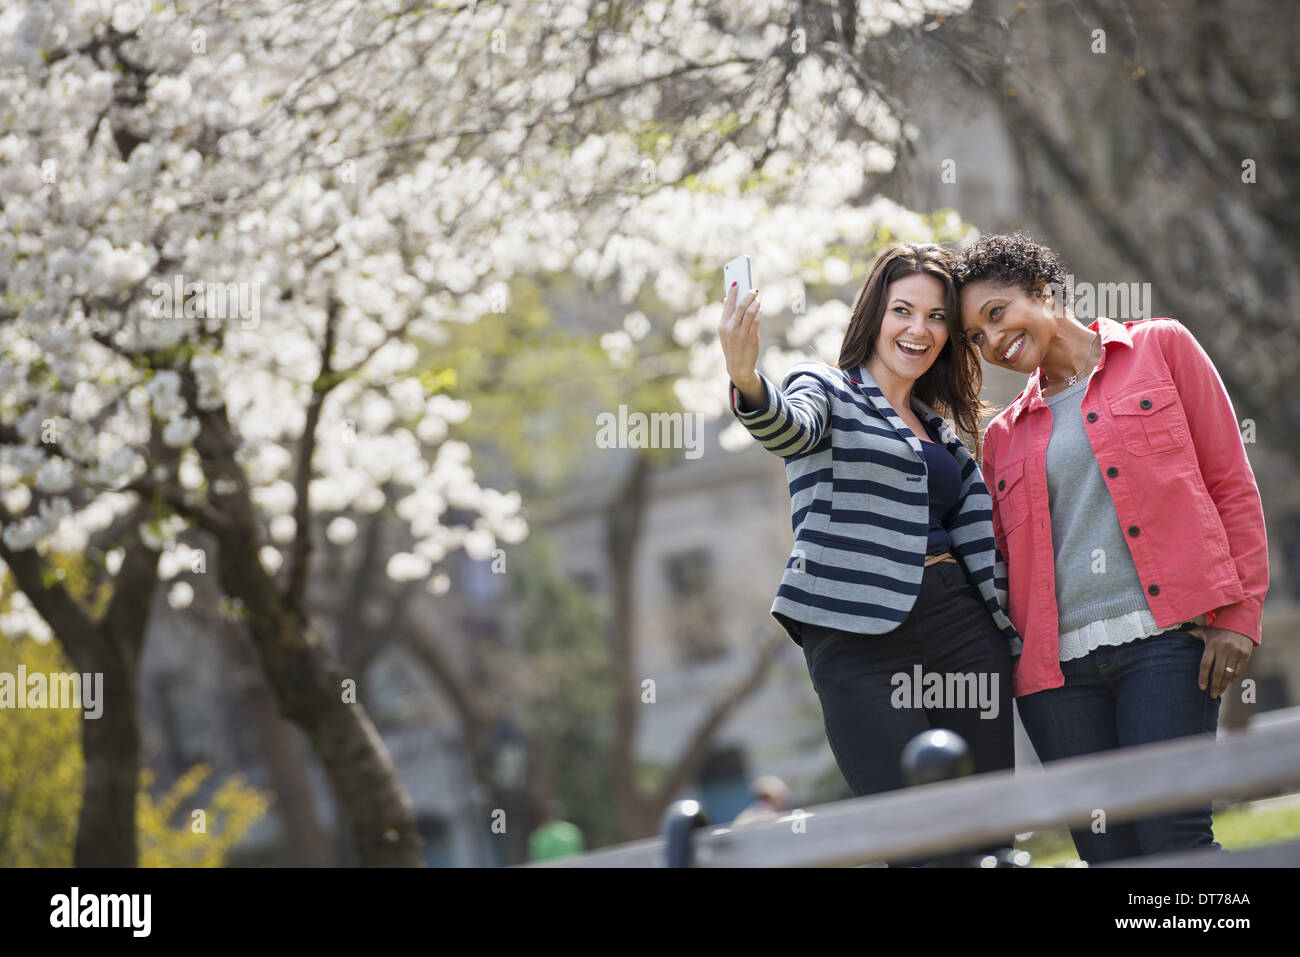 Temps de printemps. New York City park. Une jeune femme tenant un téléphone pour prendre une photo d'elle-même et d'un compagnon. Banque D'Images